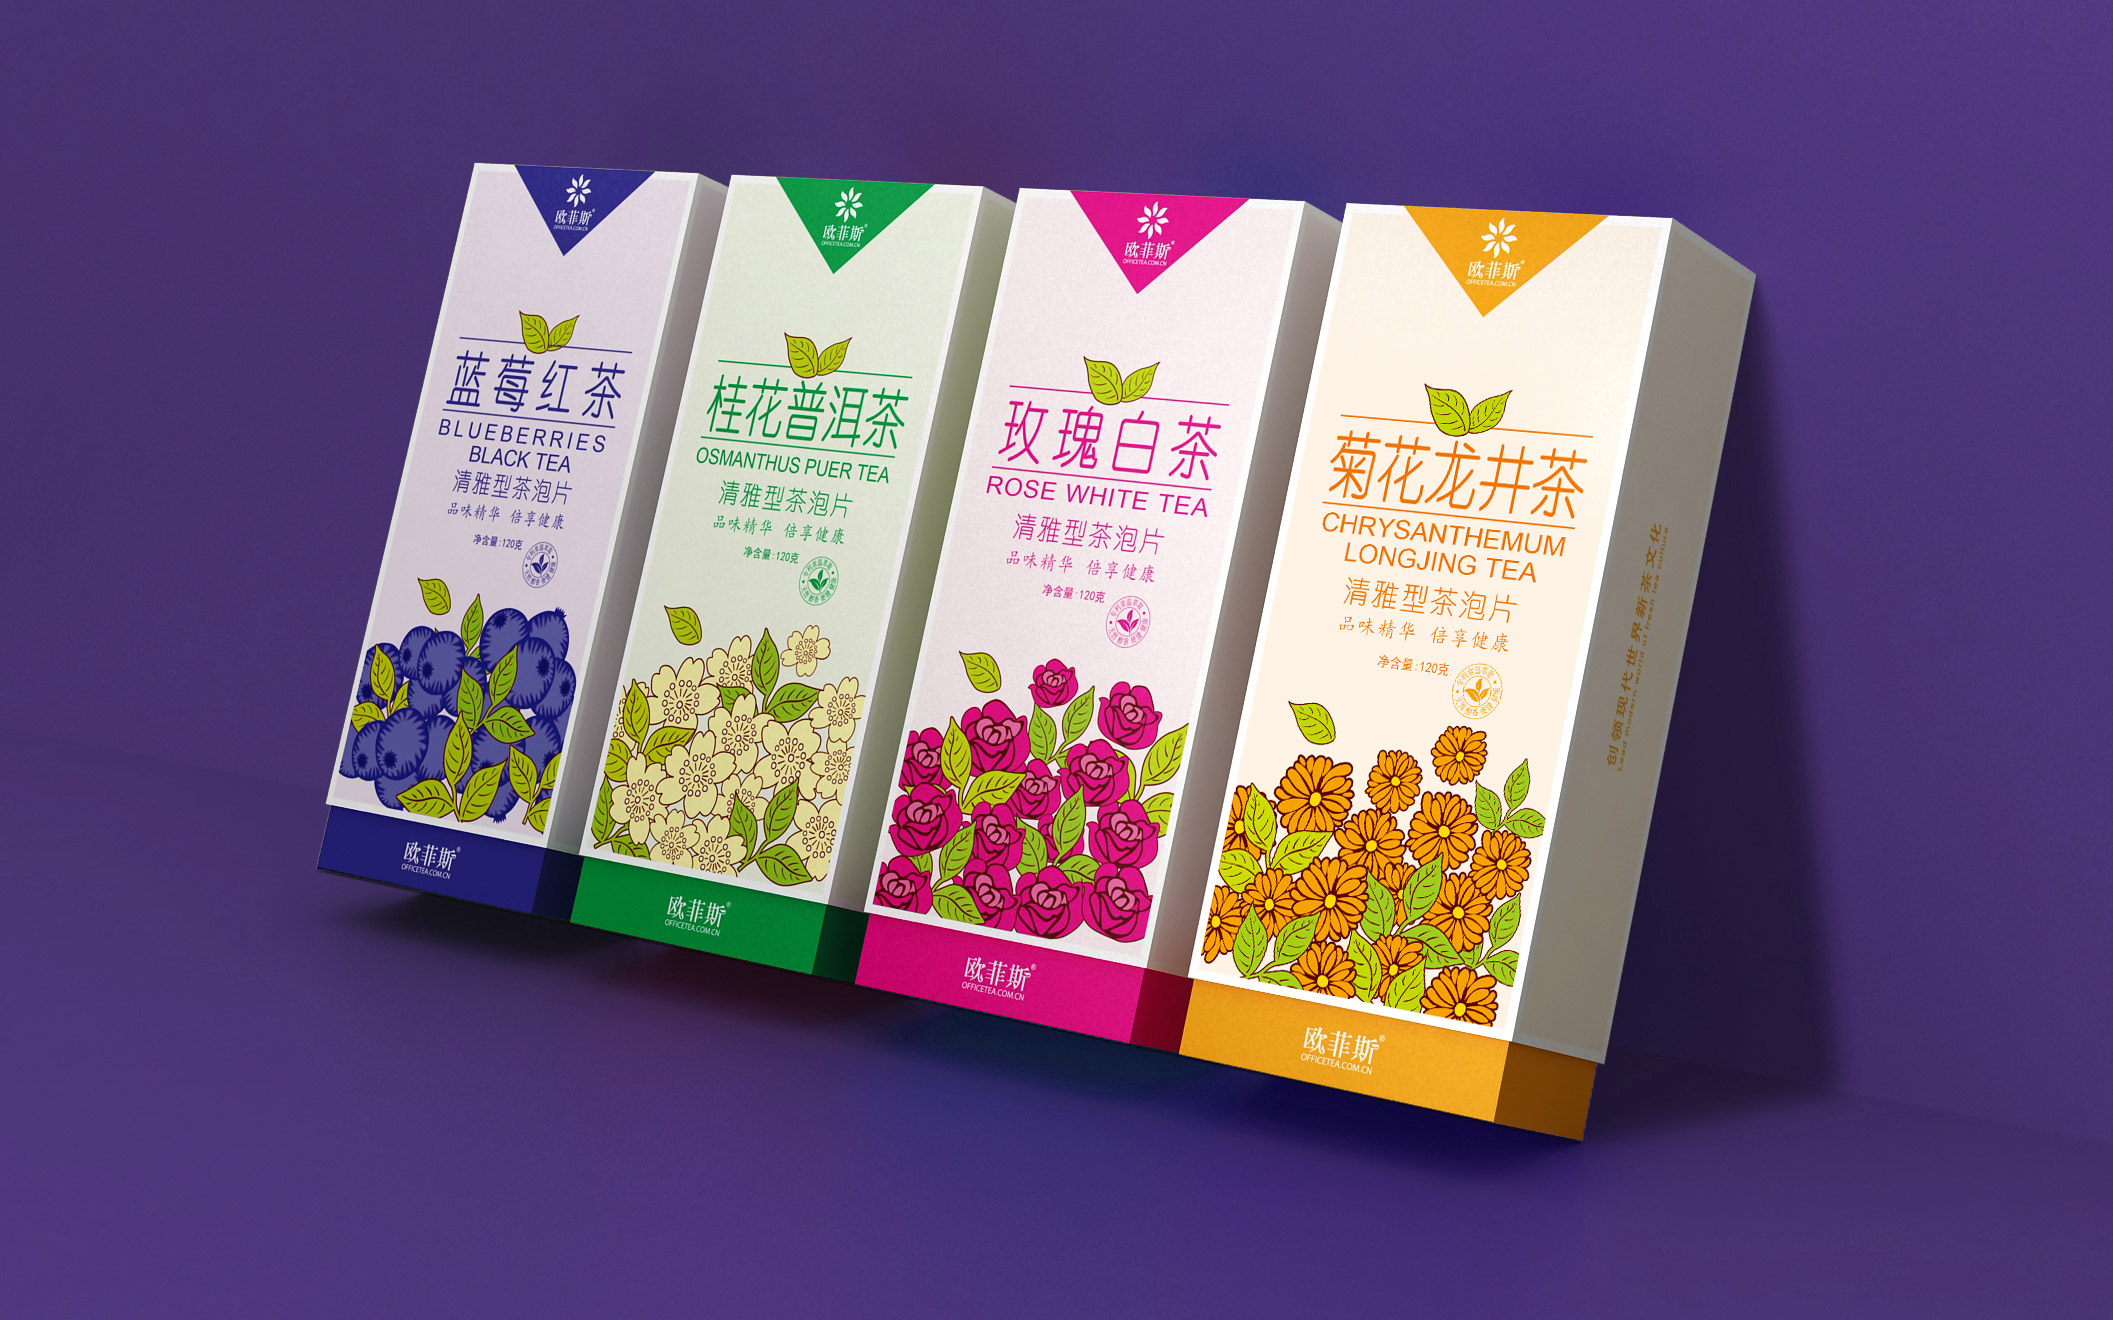 时尚茶叶包装盒设计，上海茶叶包装设计，茶叶包装设计公司，花果茶包装设计，固体茶饮料包装设计公司，上海包装设计公司。